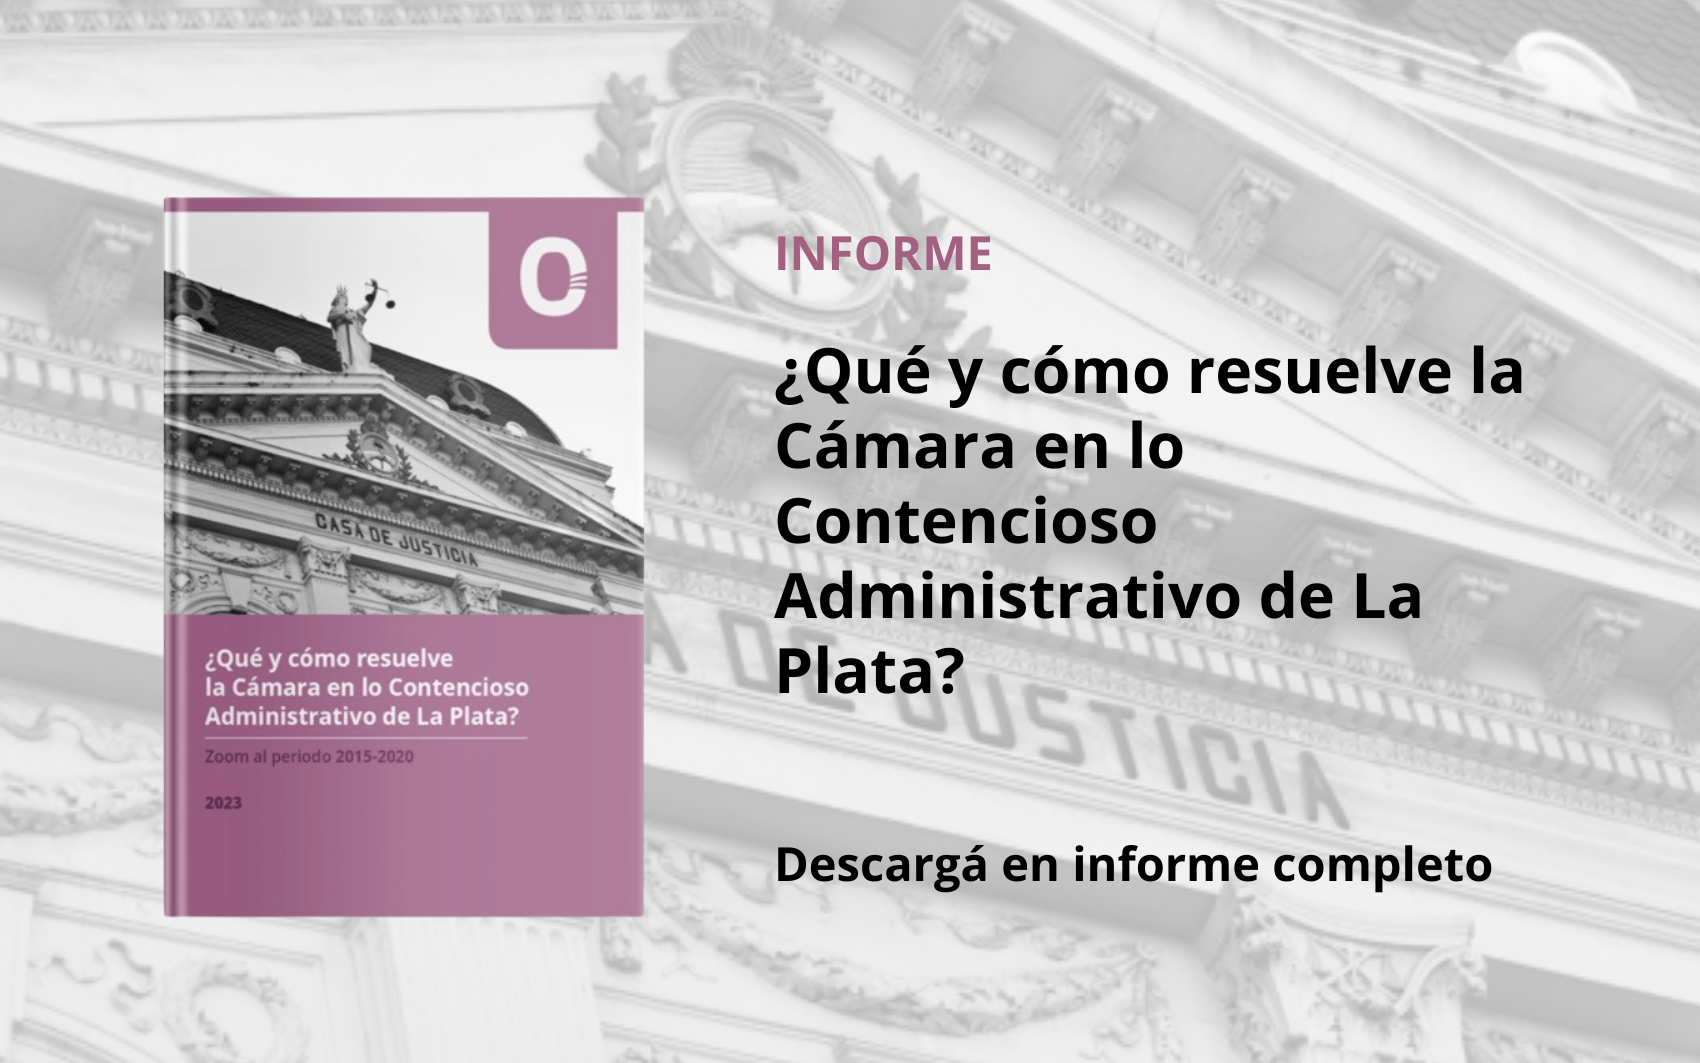 ¿Qué y cómo resuelve la Cámara en lo Contencioso Administrativo de La Plata? Zoom al periodo 2015-2020